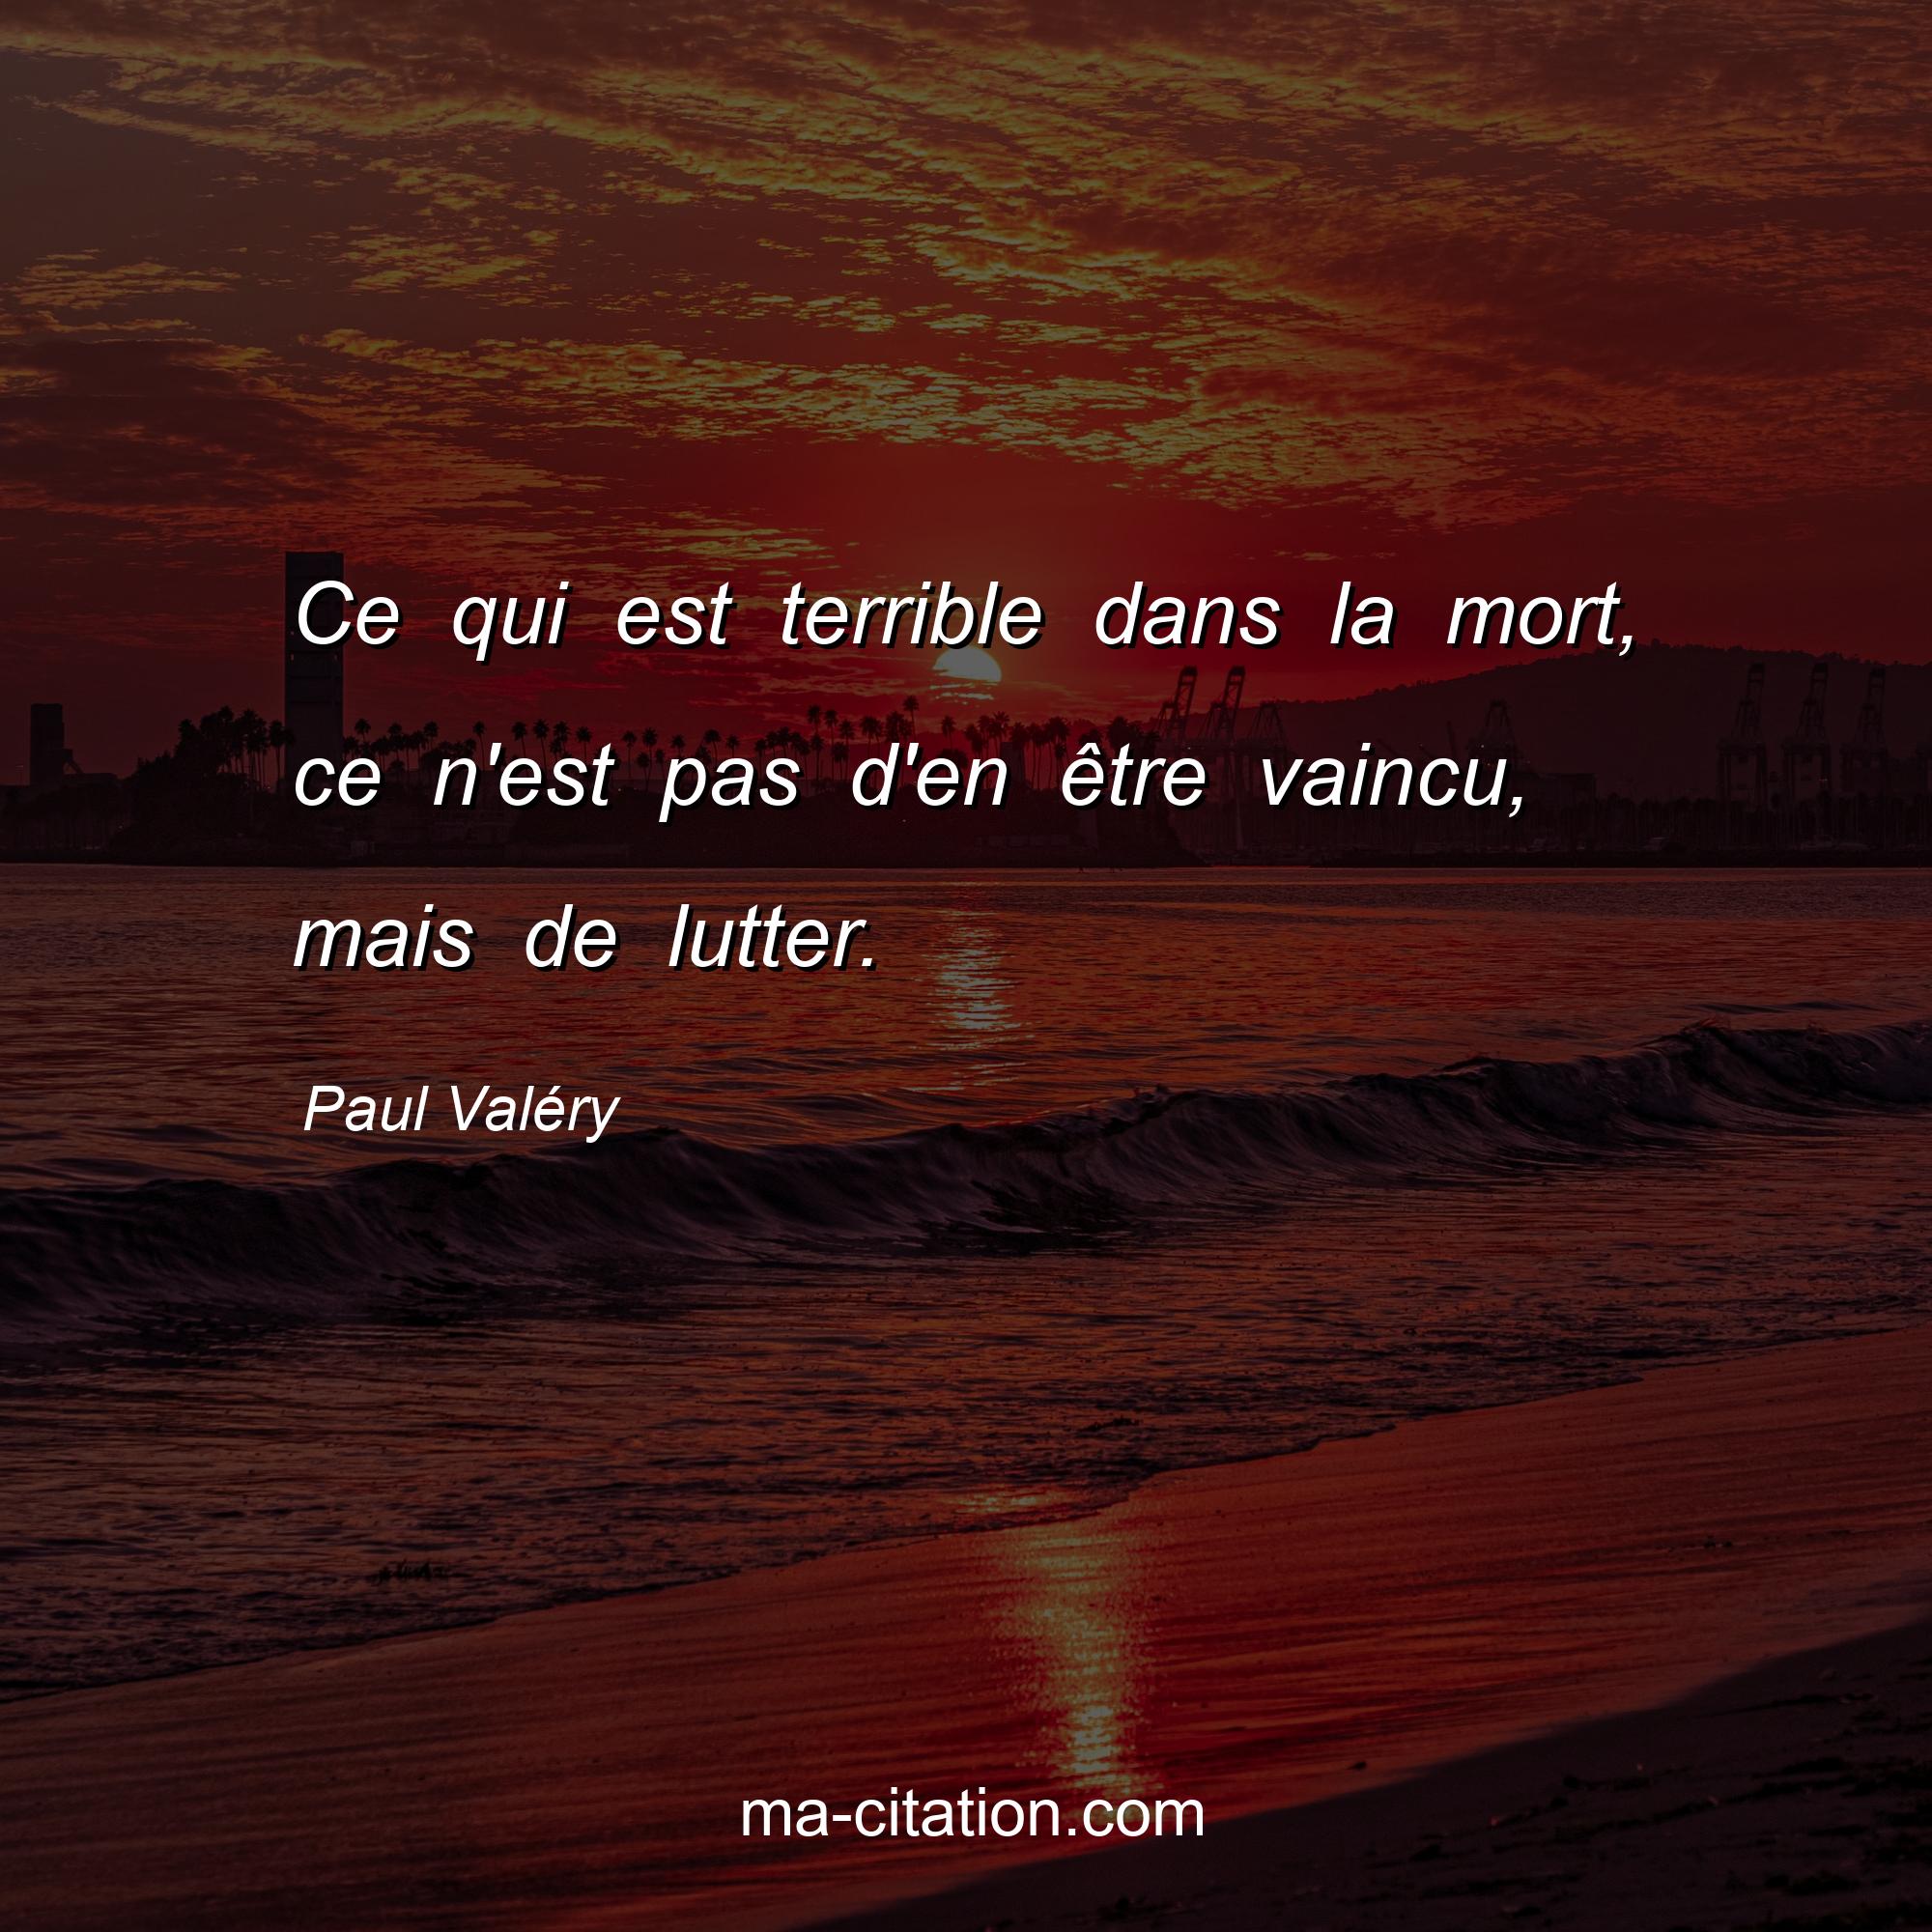 Paul Valéry : Ce qui est terrible dans la mort, ce n'est pas d'en être vaincu, mais de lutter.